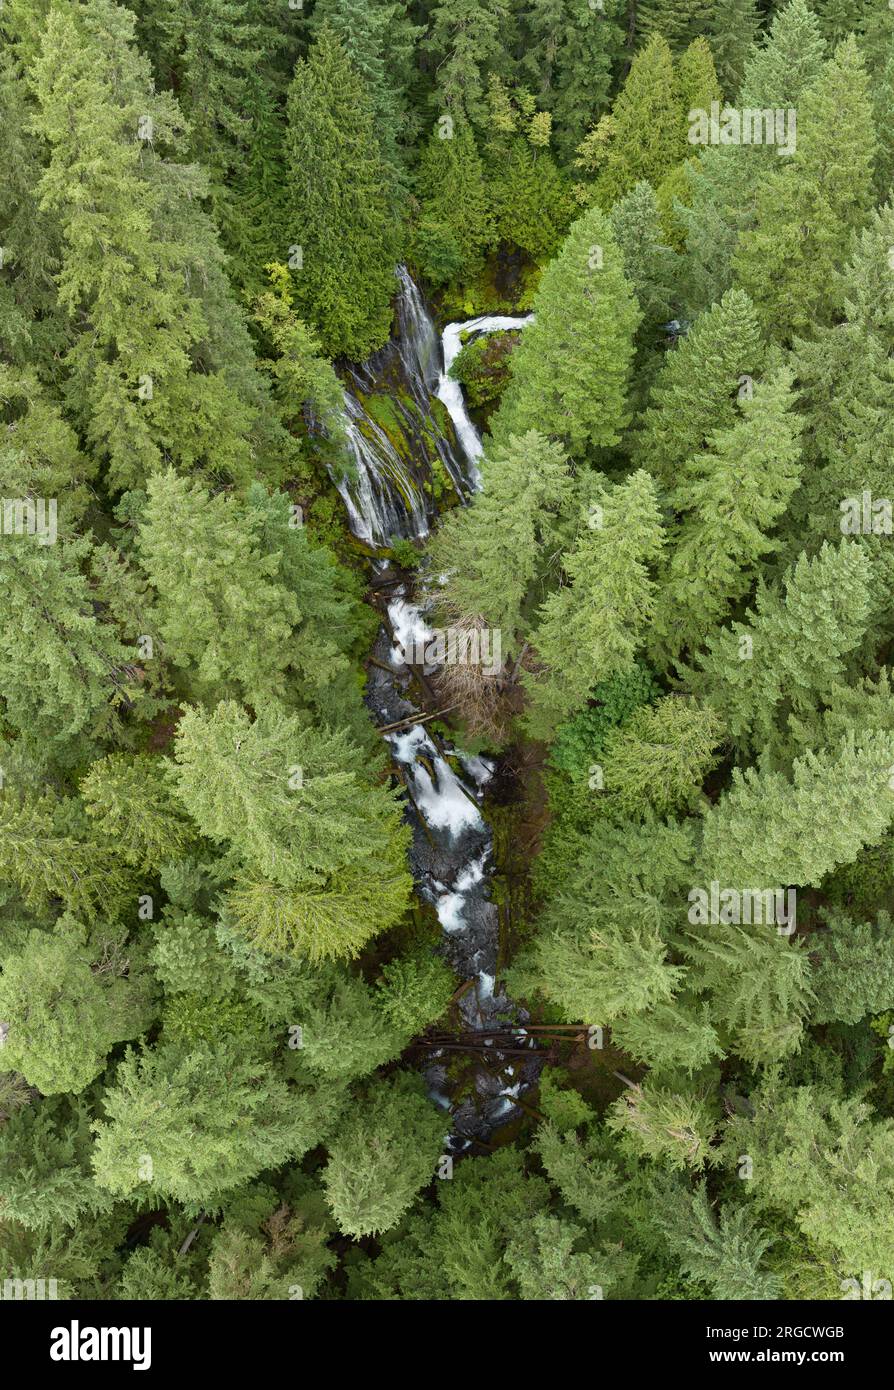 Viste da una prospettiva a volo d'uccello, le imponenti cascate di Panther Creek scorrono attraverso la Gifford Pinchot National Forest a Washington. Foto Stock